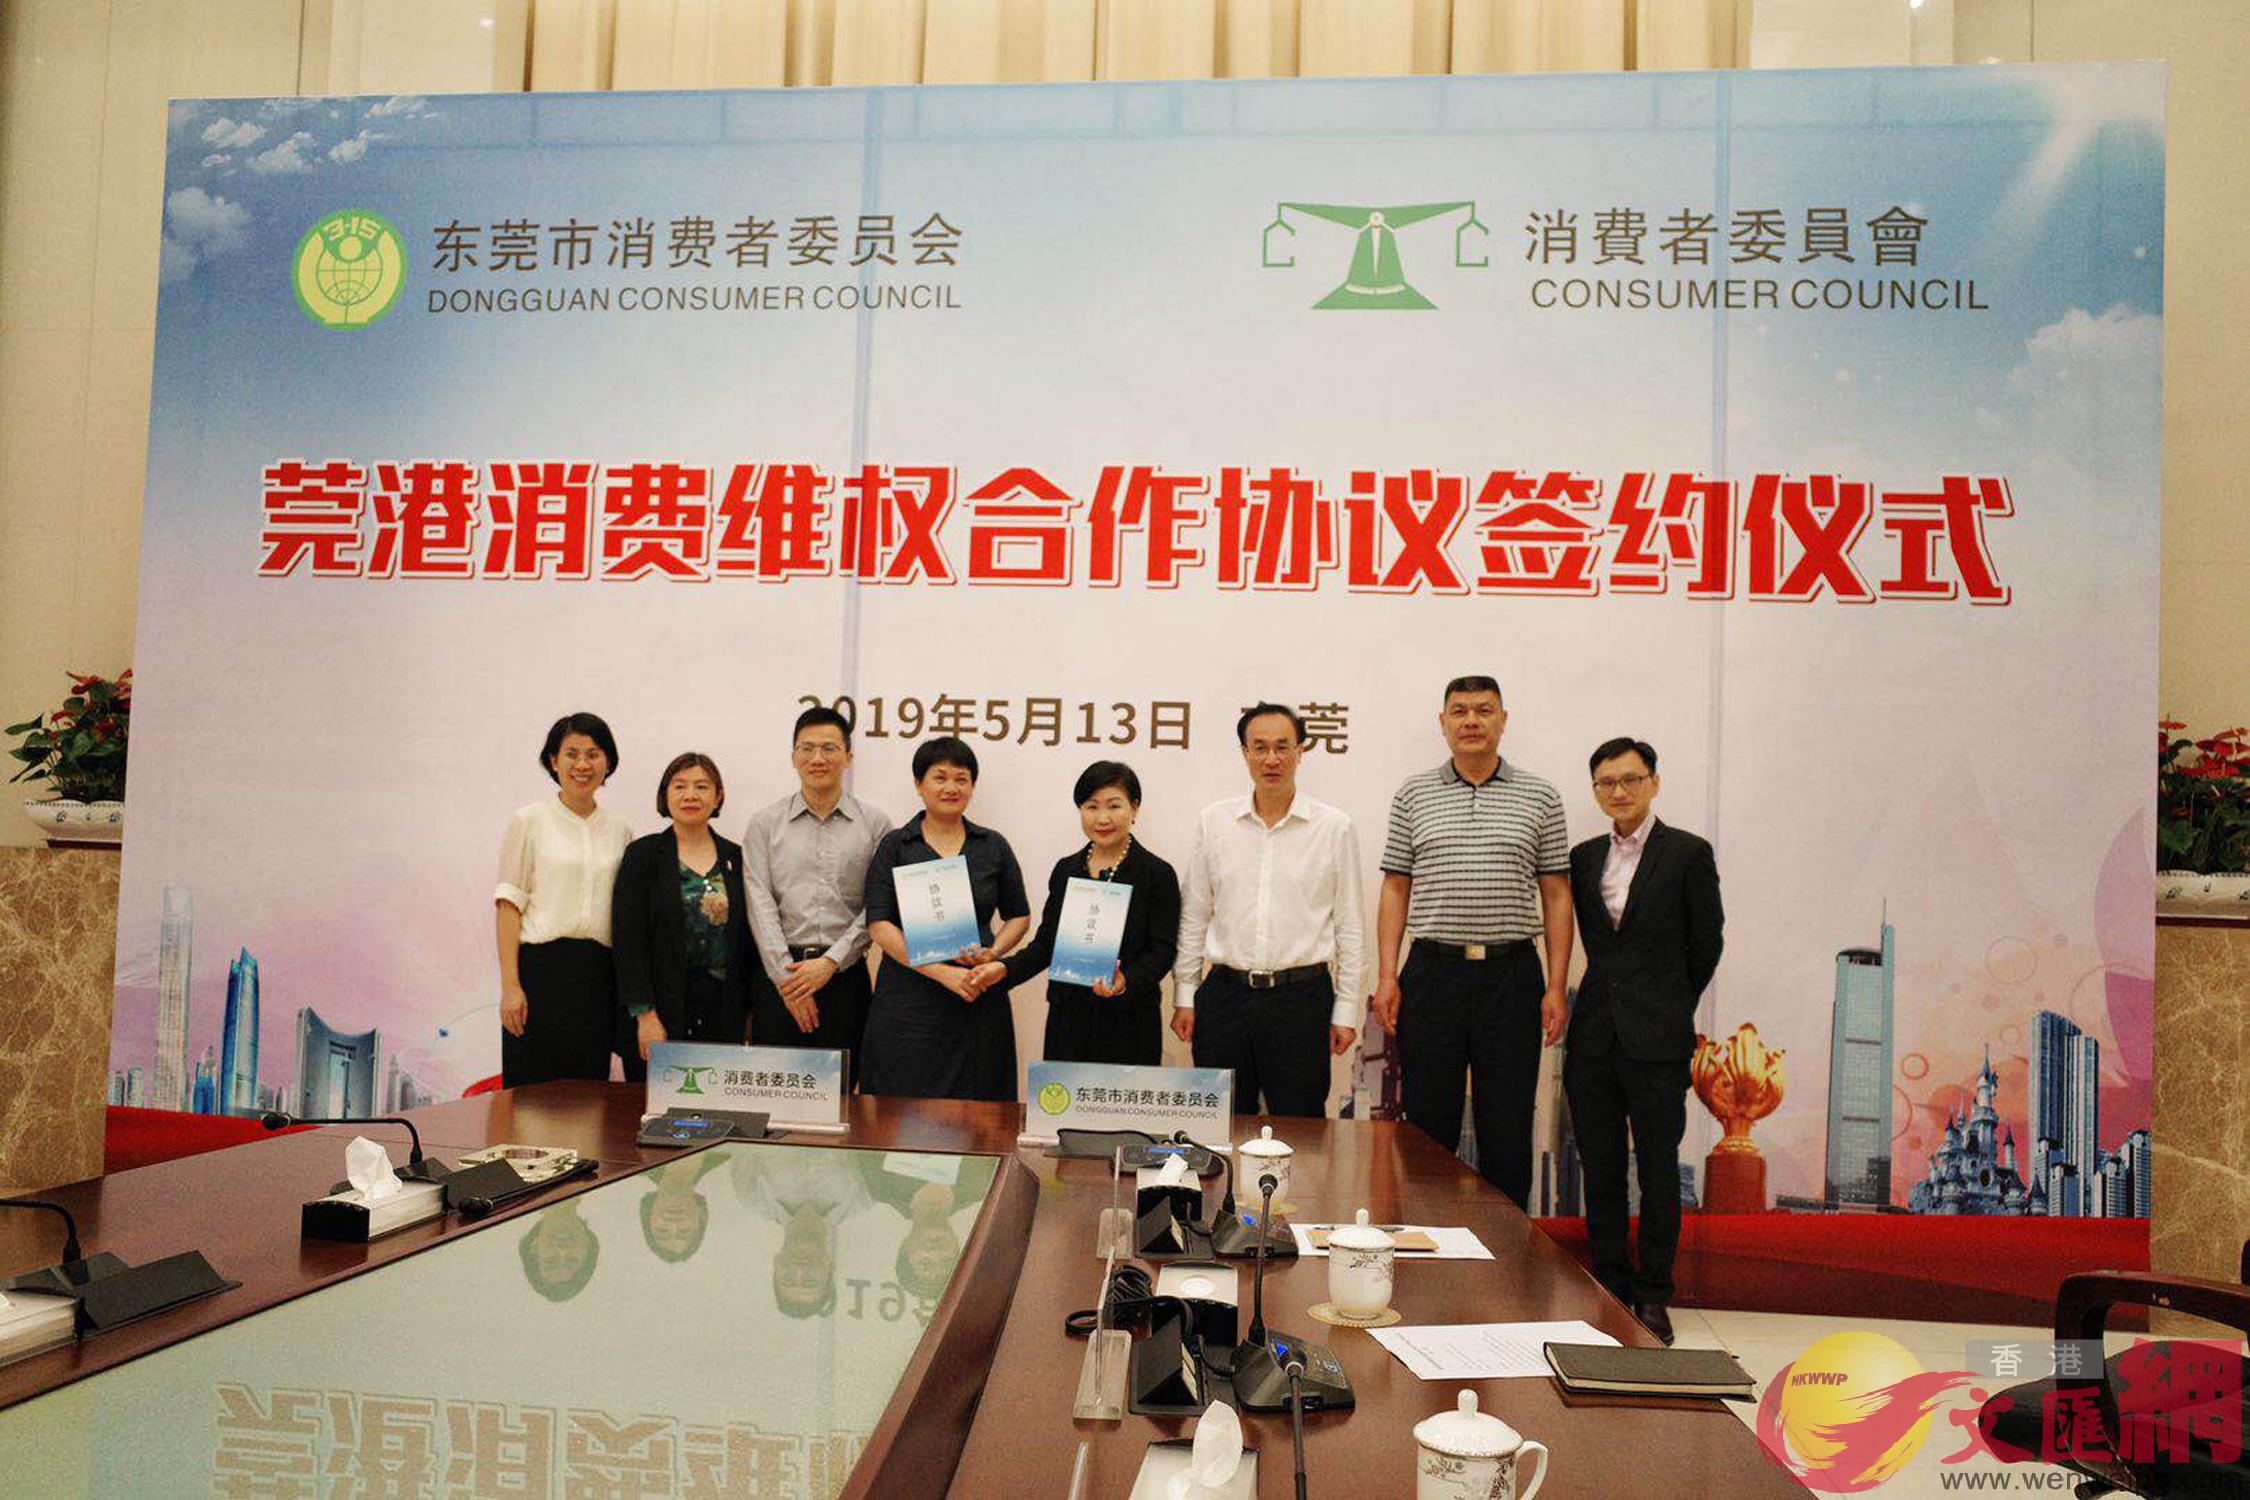 東莞和香港13日簽訂了m莞B港消費者組織合作協議nC]記者盧靜怡攝^